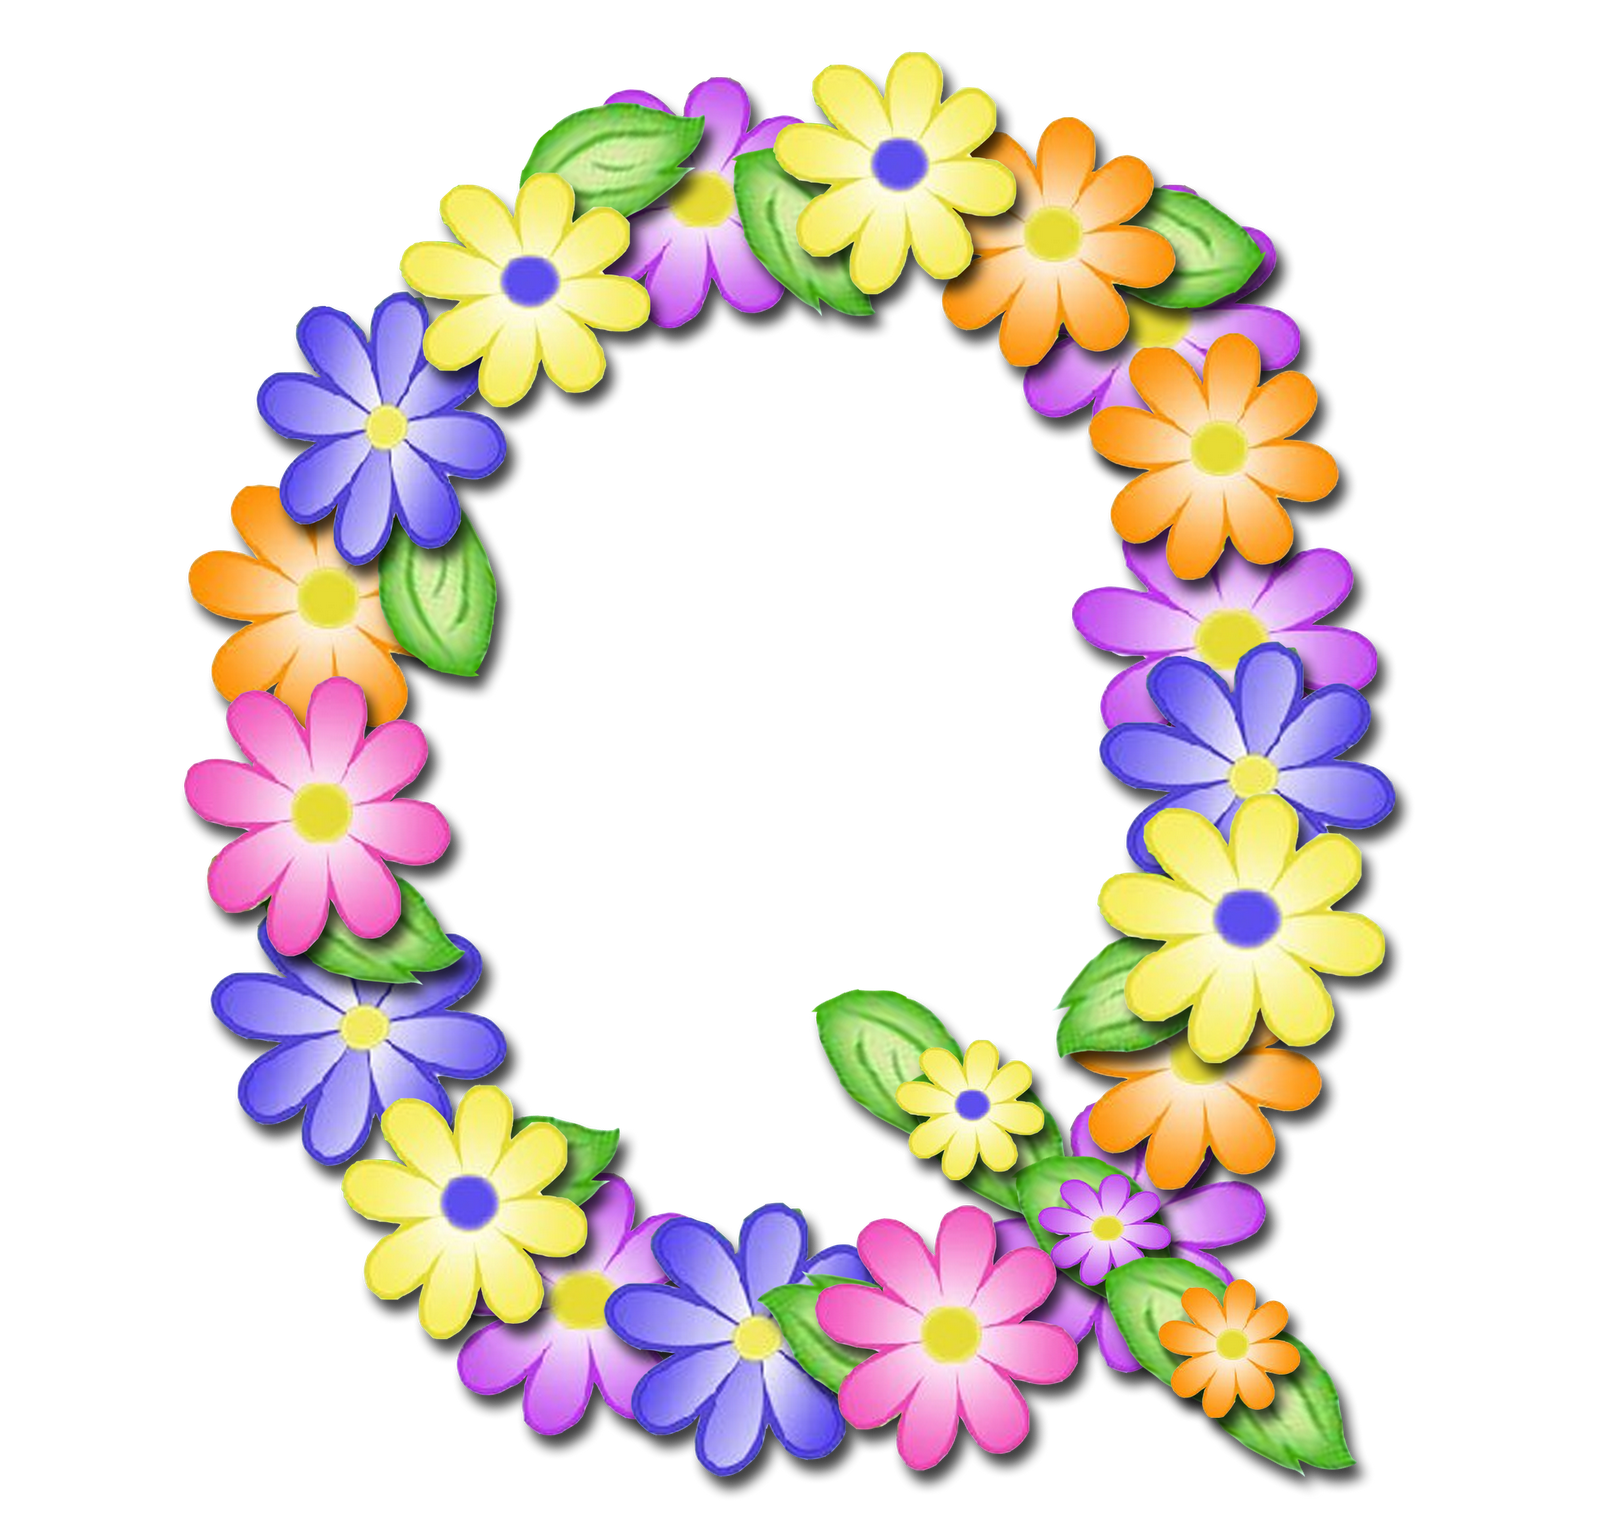 صور الحروف الإنجليزية بأجمل الزهور والورود بخلفية شفافة بنج png وجودة عالية للمصممين :: إبحث عن حروف إسمك بالإنجليزية - صفحة 2 Q